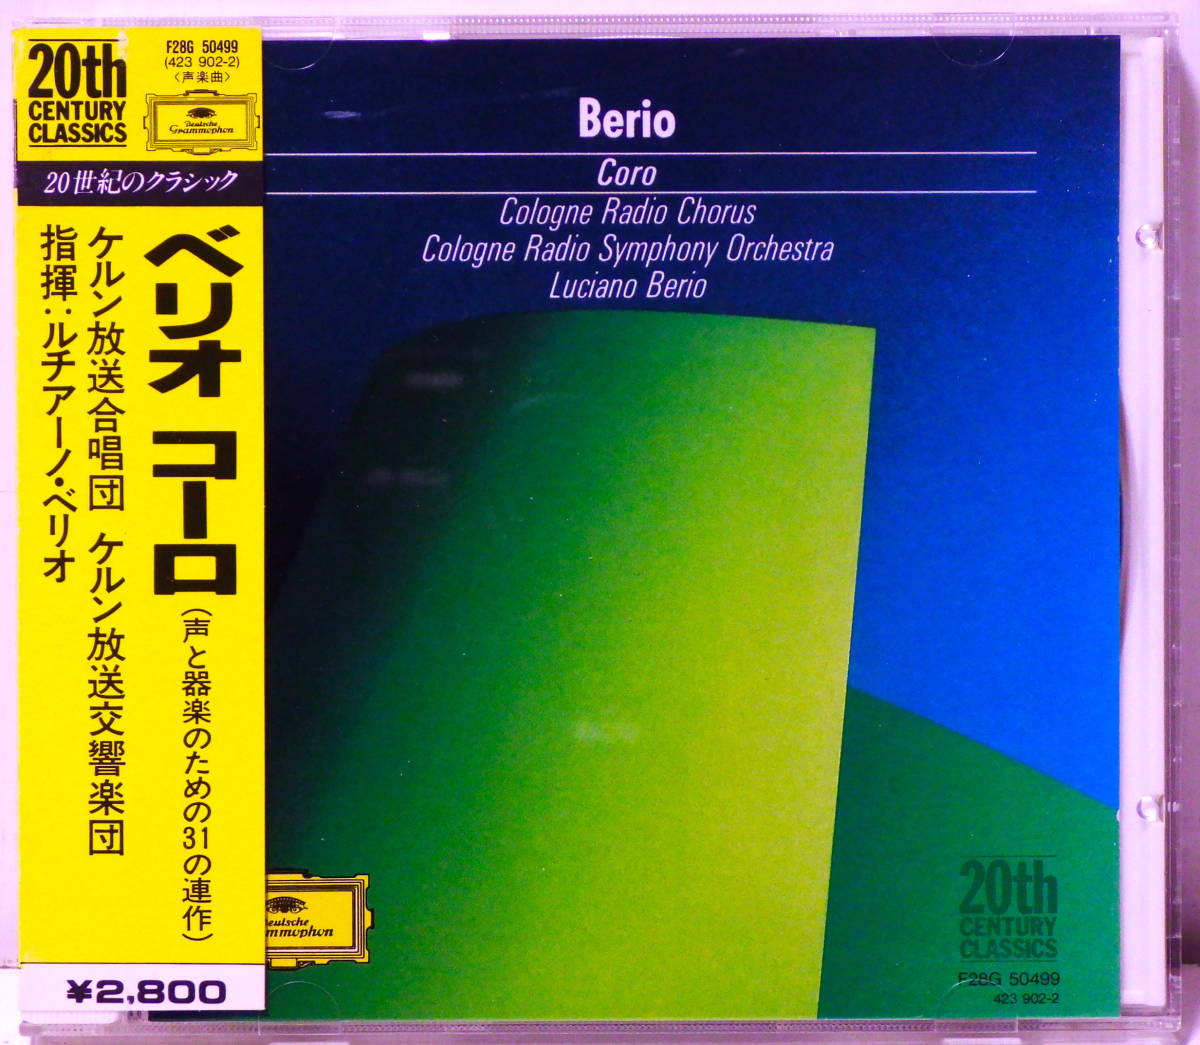 西独盤 ベリオ コーロ 声と楽器のための31の連作 自作自演 BERIO CORO FOR VOICES AND INSTRUMENTS DGG F28G 50499 MADE IN WEST GERMANY_画像1